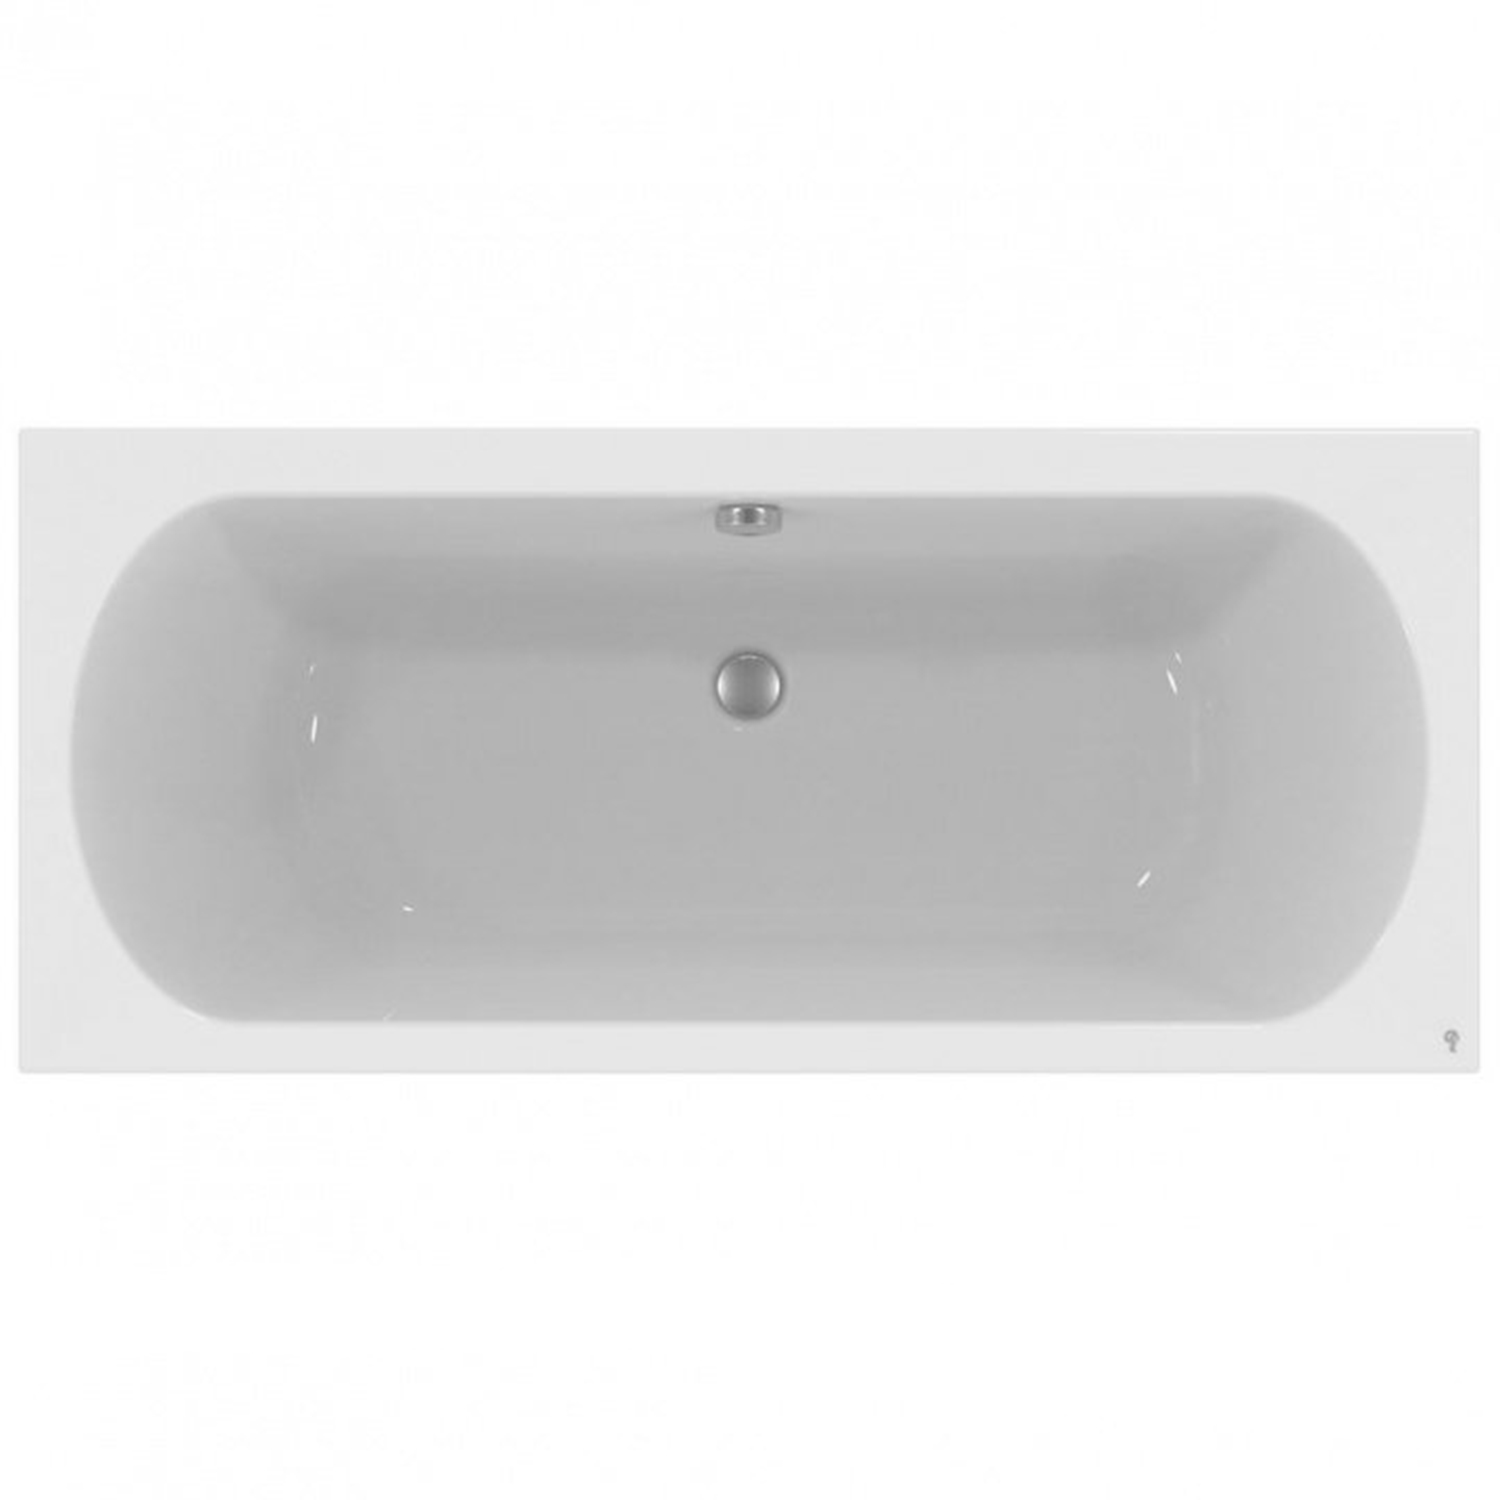 Акриловая ванна Ideal Standard Hotline 180х80 акриловая ванна ideal standard connect air 140х140 на ножках